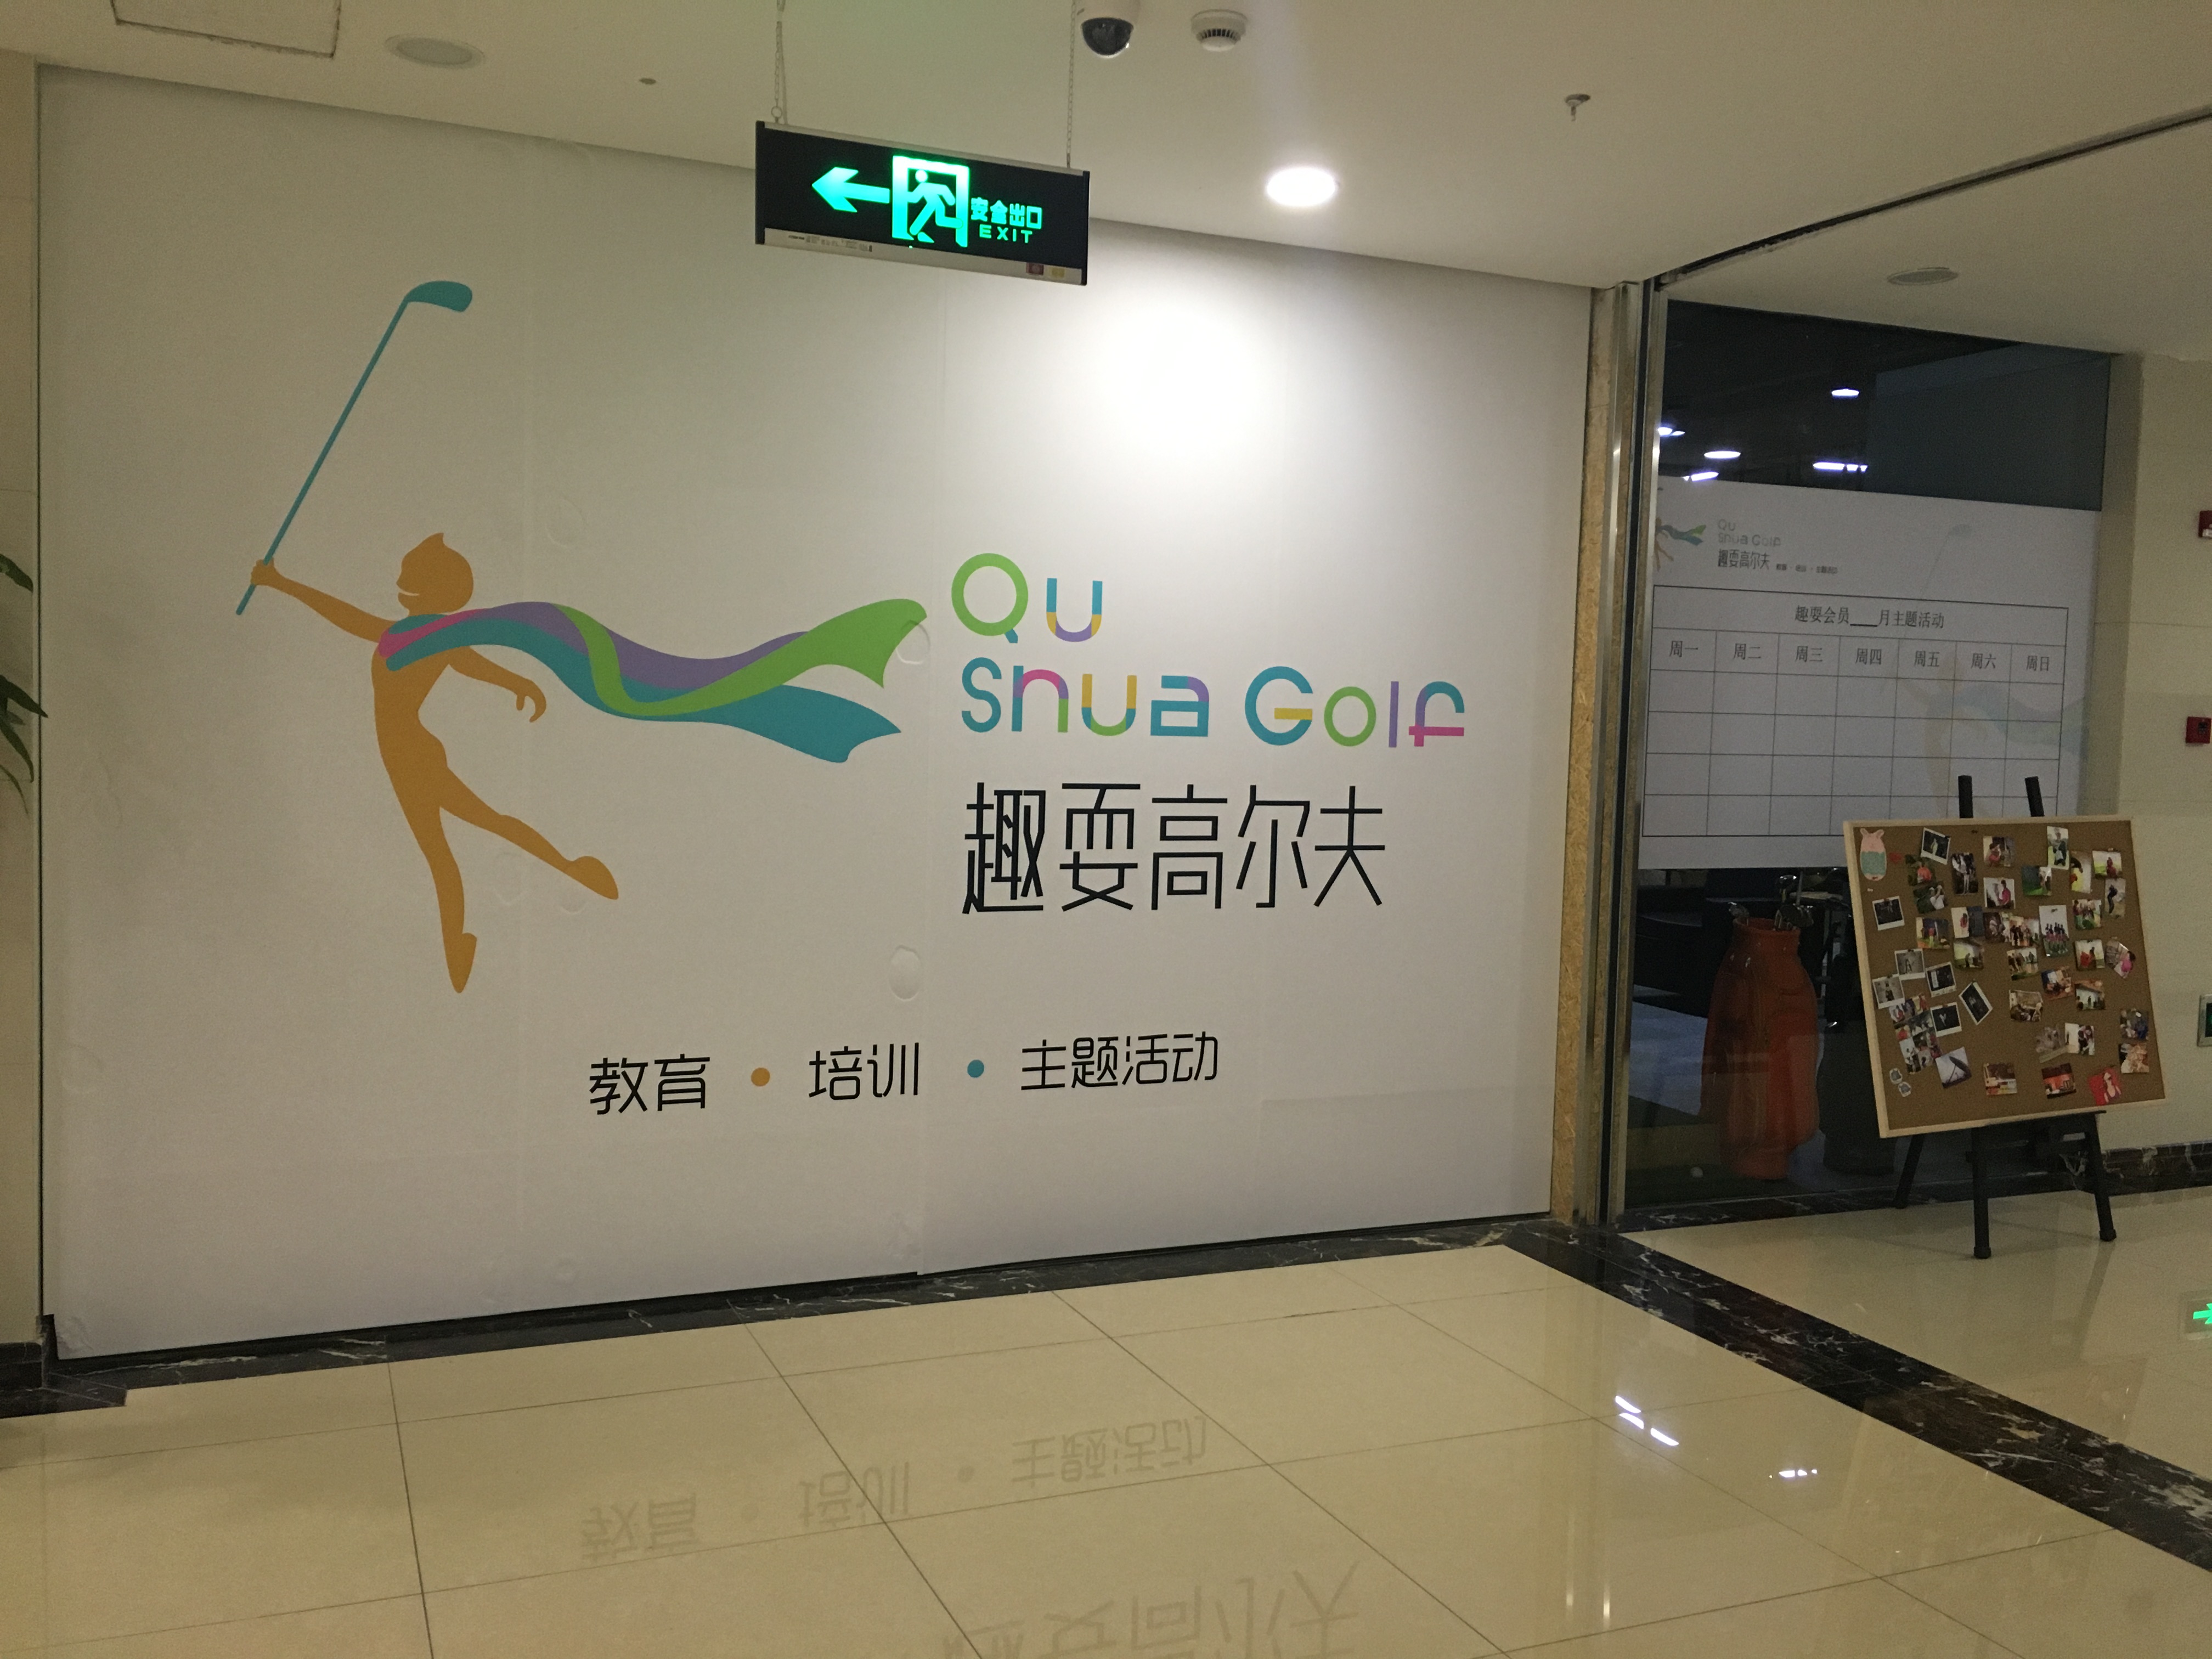 上海趣耍室内高尔夫教学中心(七宝店)（无效）